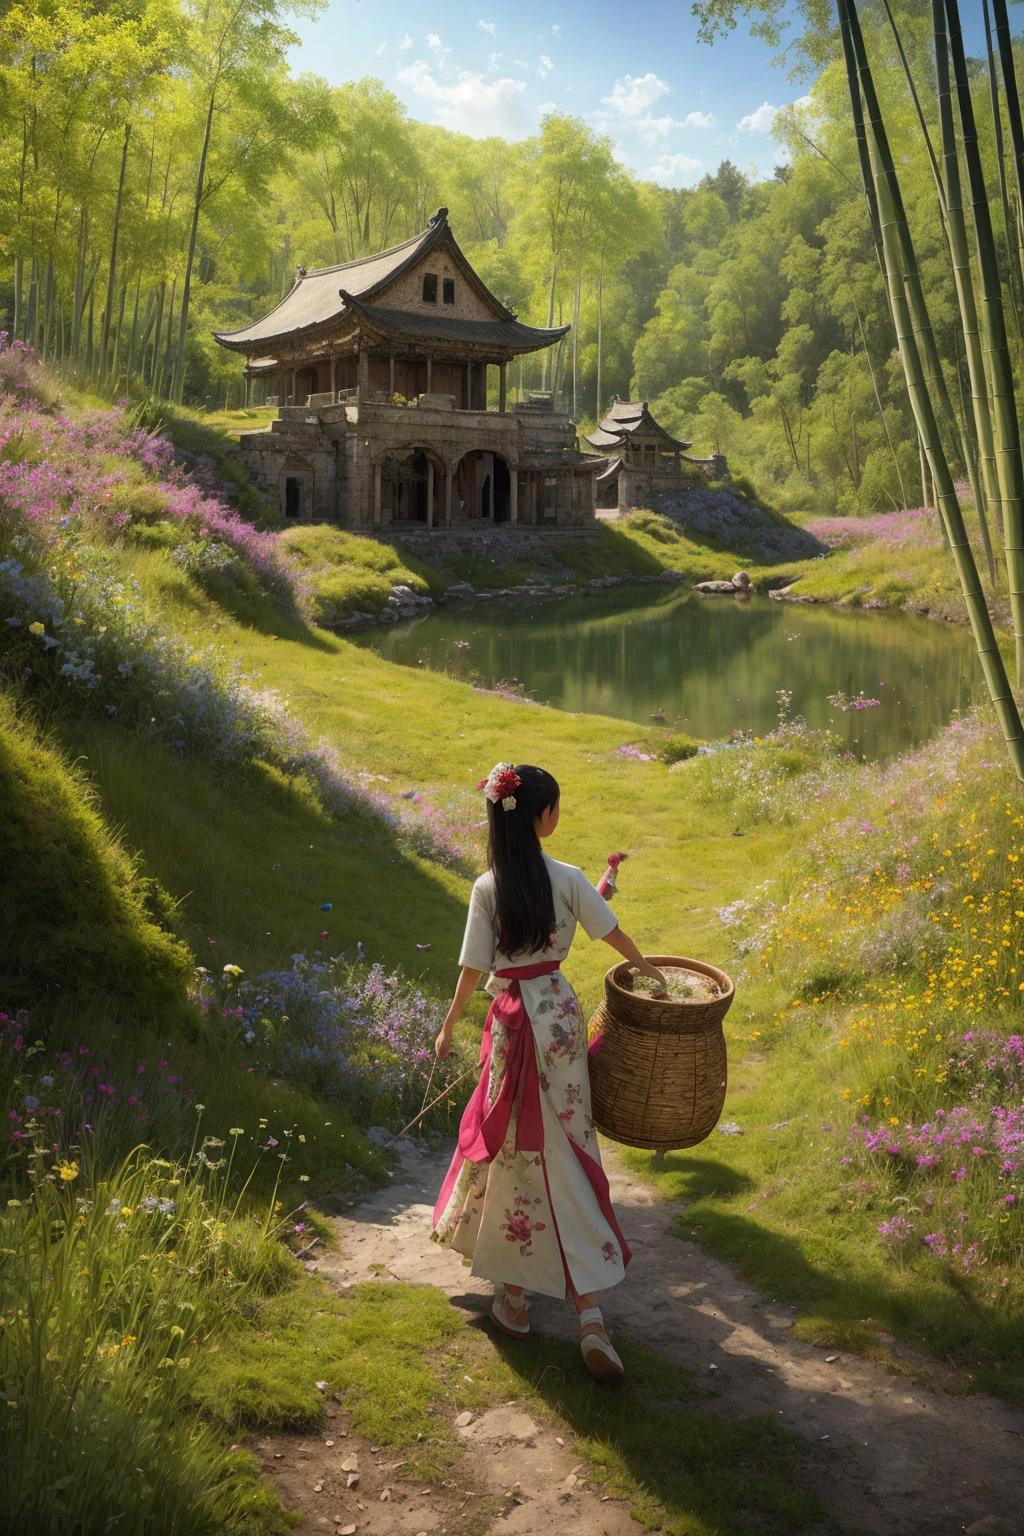 Dans une image fixe, un lac tranquille abrite des ruines antiques en son centre, couvert de fleurs sauvages, graminées, mousse, et des champignons. Au milieu de cette scène captivante, une jeune fille chinoise en tenue traditionnelle cueille des champignons, son panier en bambou sur le dos, alors que les papillons voltigent autour d&#39;elle, créer un sentiment d&#39;harmonie et de mystère.
hdr, (photoréalisme, qualité de chef-d&#39;œuvre, meilleure qualité),  pureerosface_v1